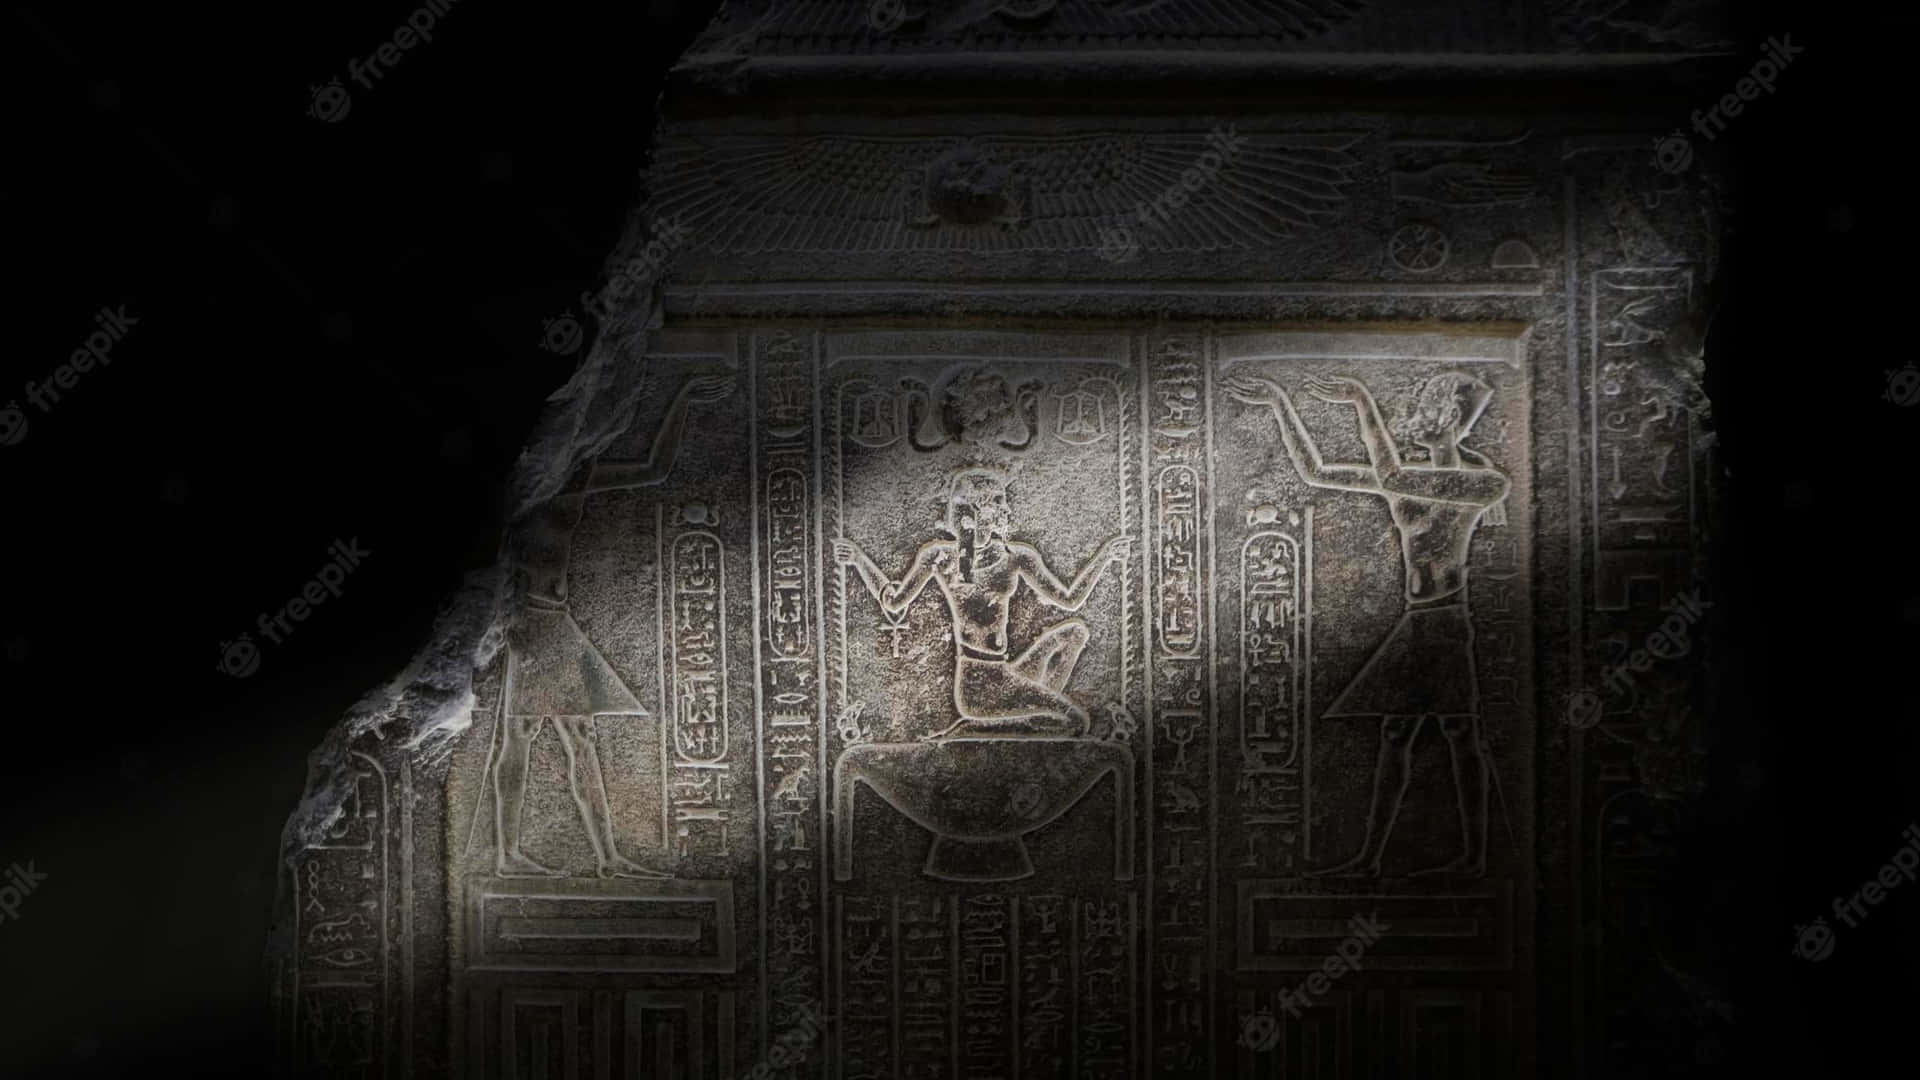 Egyptiskafaraonstatyer I Mörkret. Wallpaper